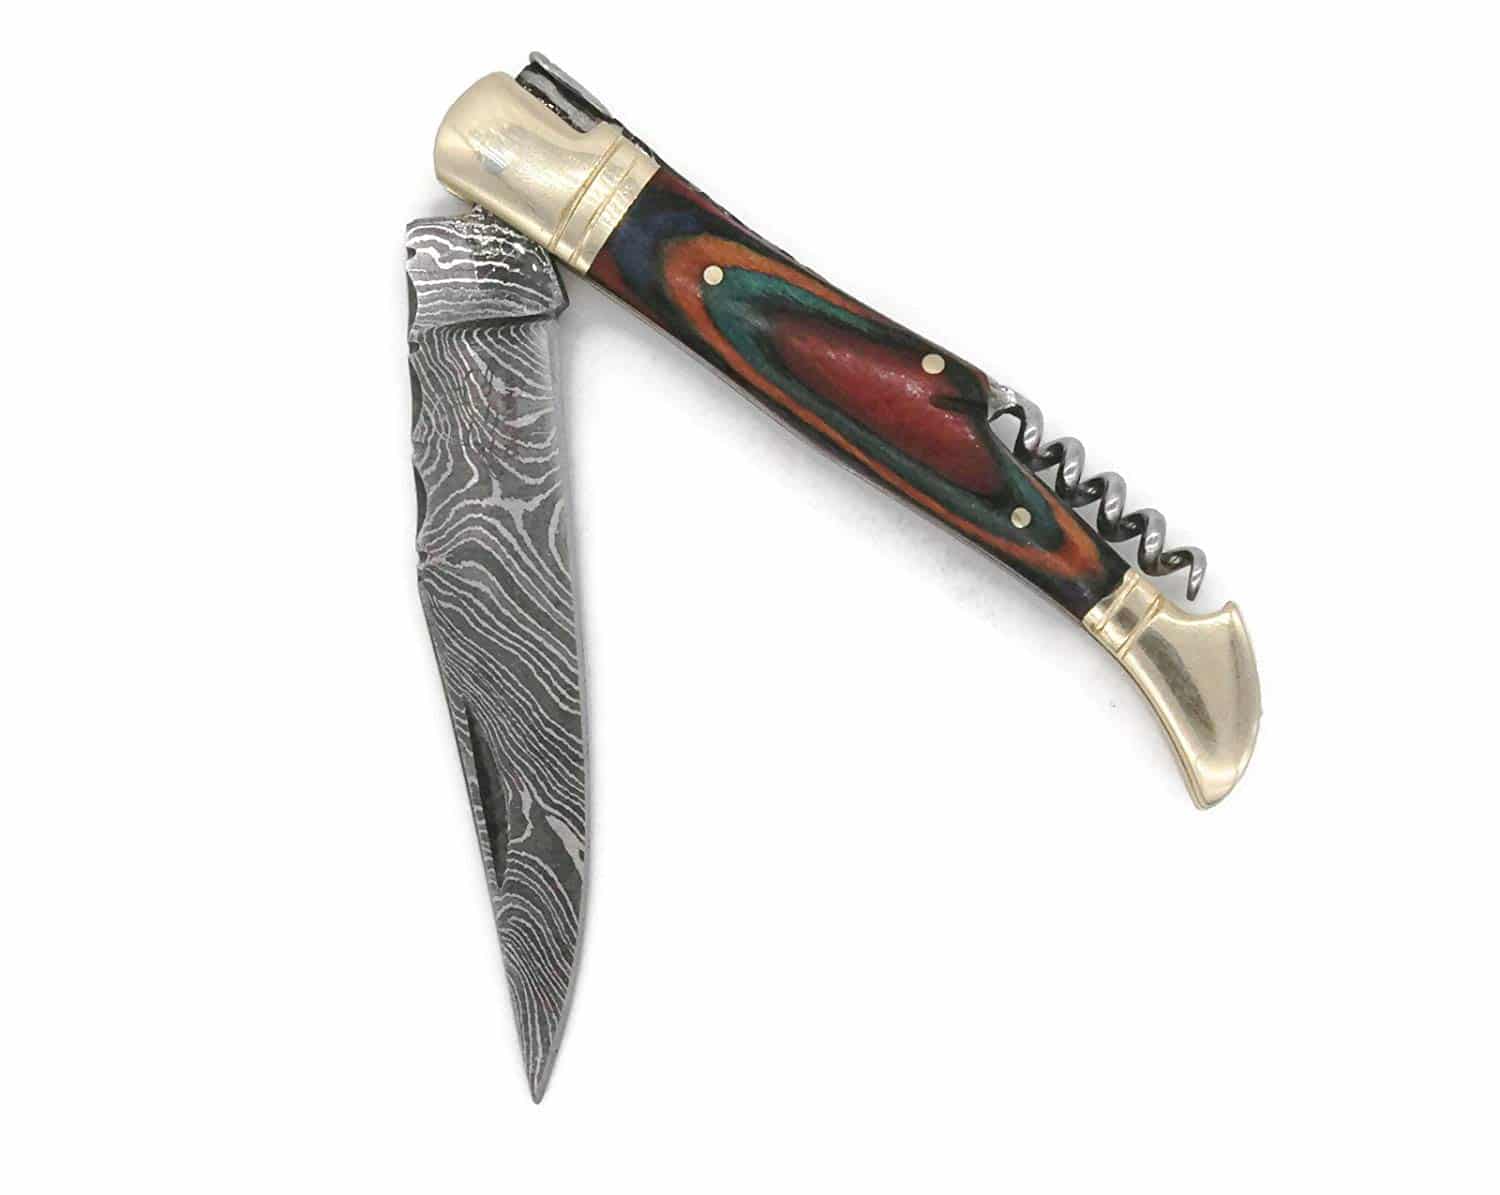 DKC-785 Rainbow Laguiole Damascus Pocket Knife